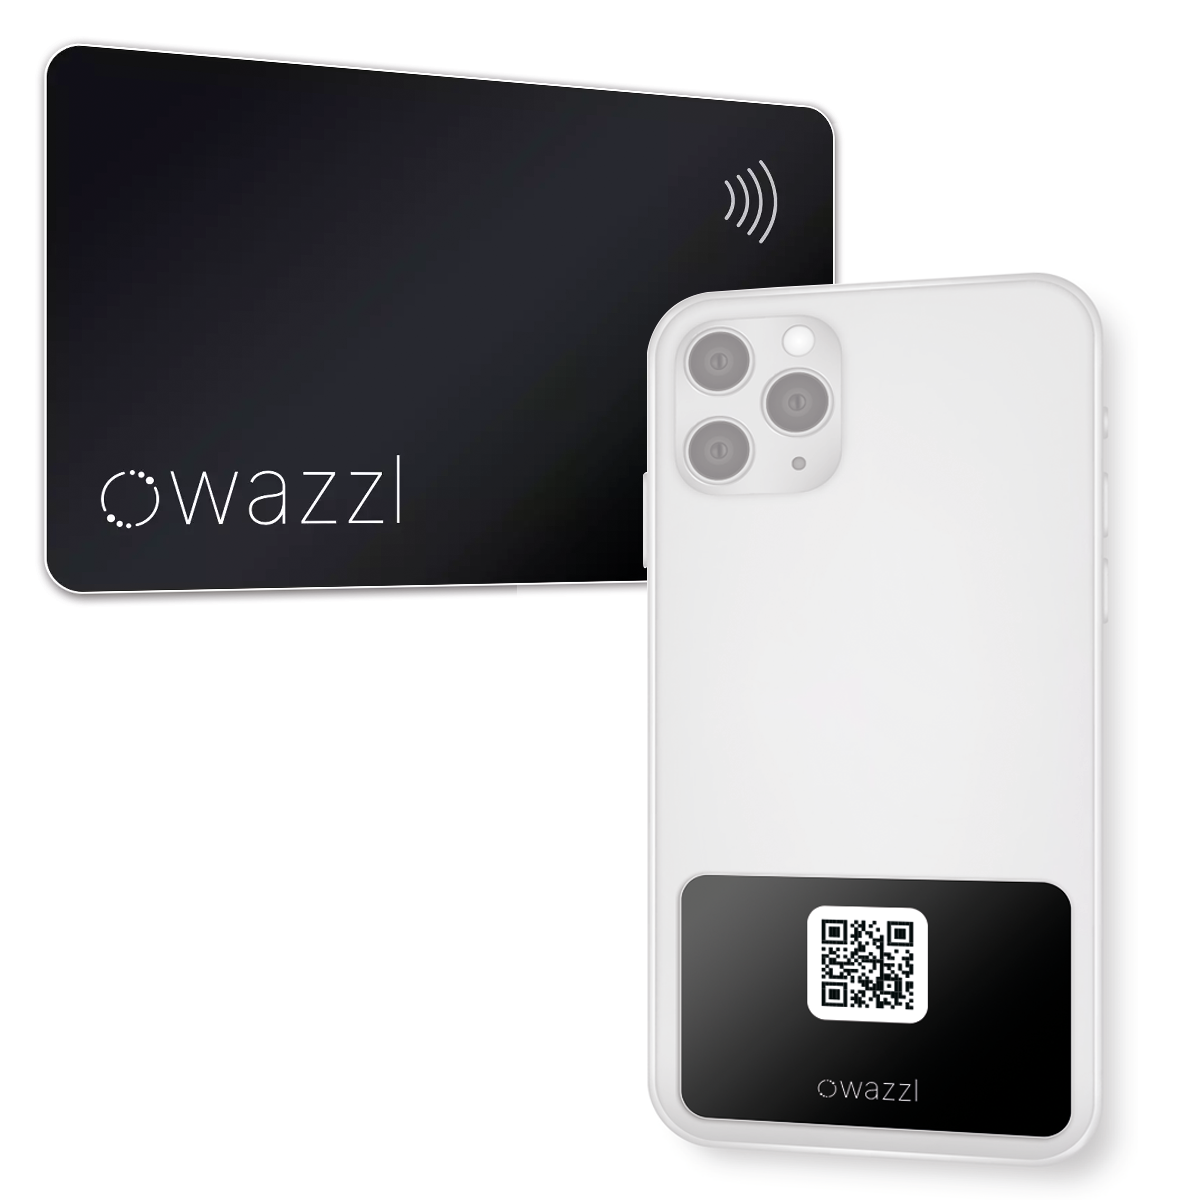 Kit de démarrage carte à puce (avec code QR) et wazzl NFC